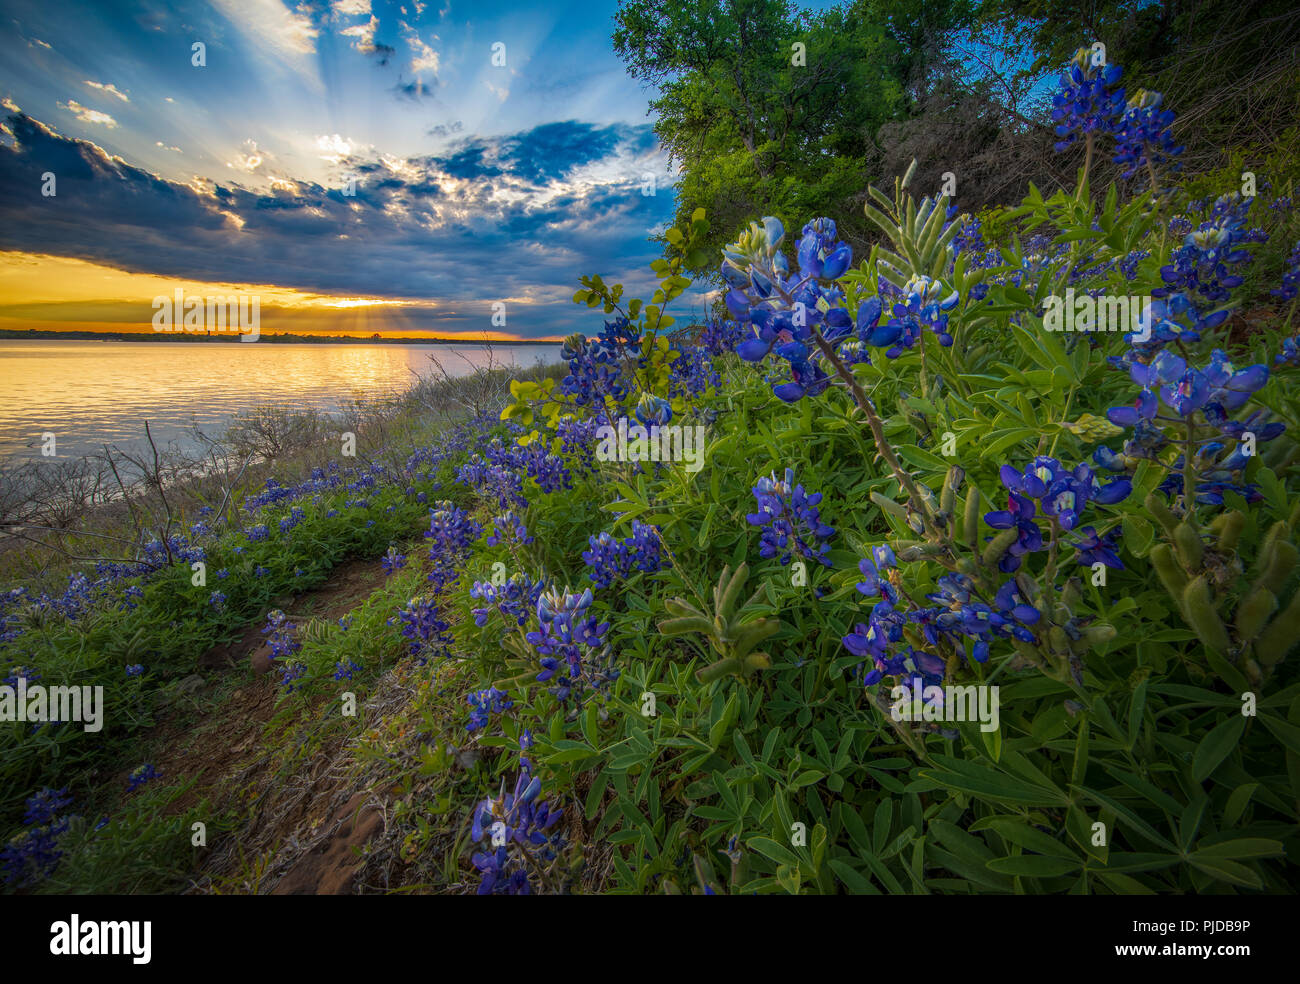 Bluebonnets à Grapevine Lake dans la région de North Texas. Lupinus texensis, le Texas bluebonnet, est une espèce de lupin endémique au Texas. Banque D'Images